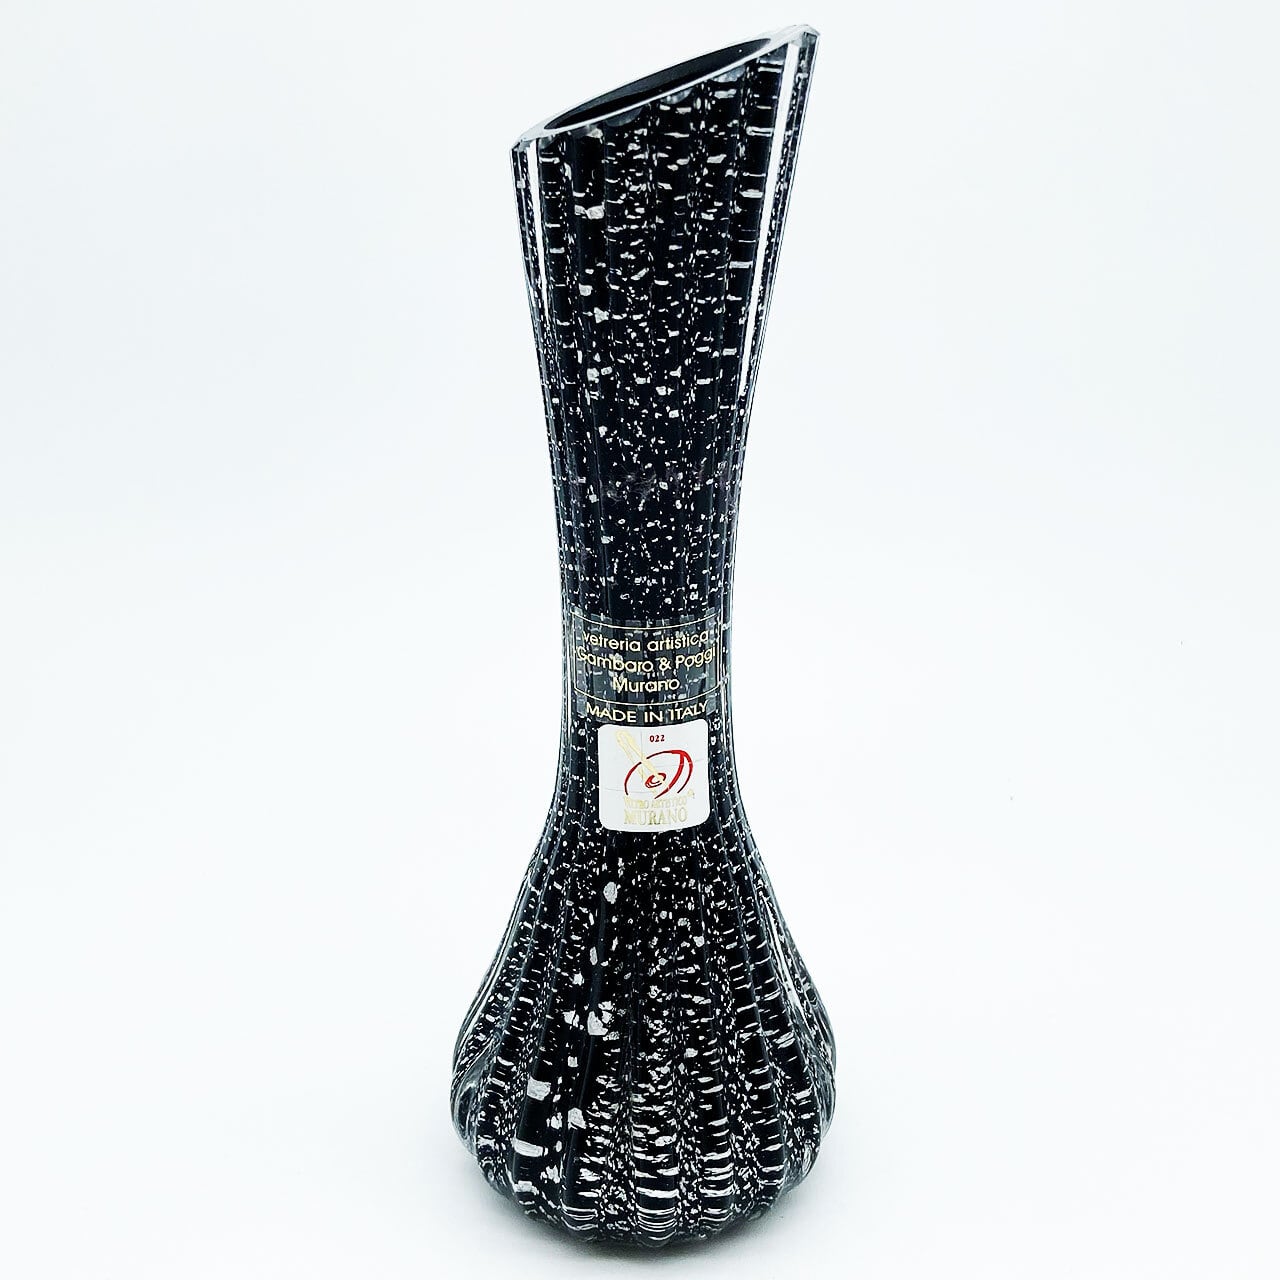 ベネチアングラス ムラノ イタリア Gambaro & Poggi 花瓶 ブラック クリア シルバー 銀彩 ヴェネチアガラス 19.0cm